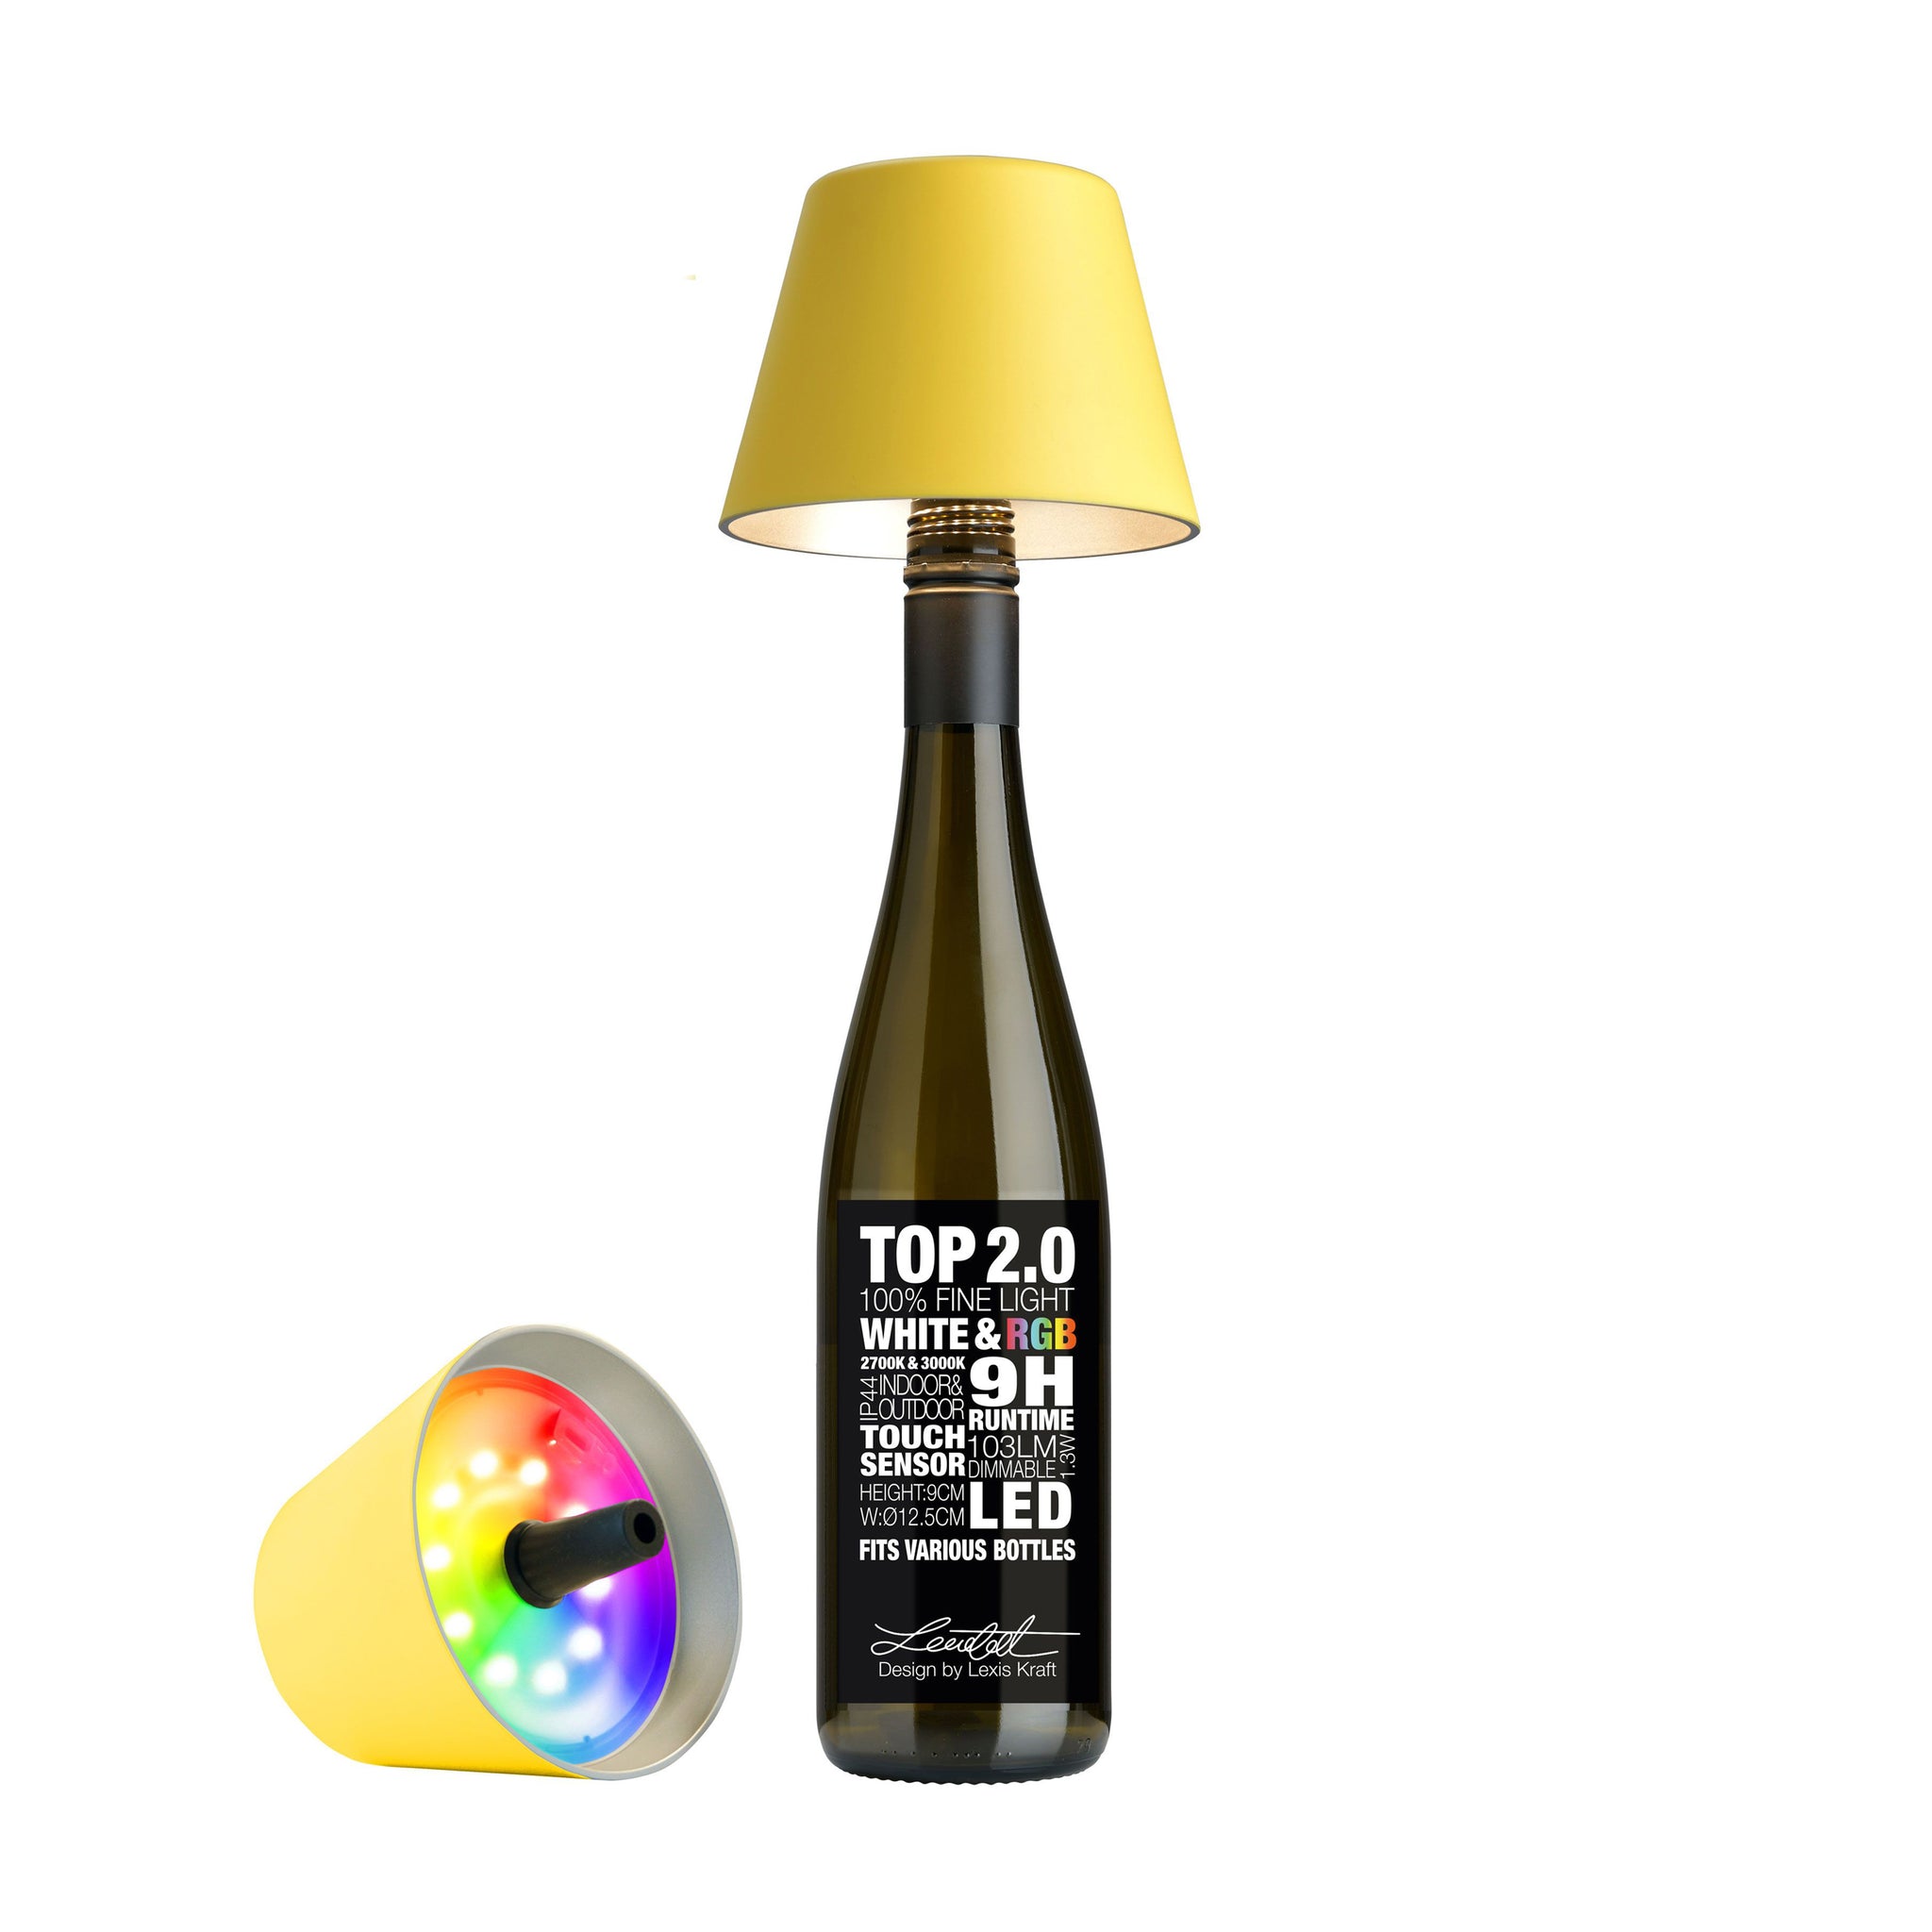 Sompex Top 2.0 Oplaadbare Flessenlamp│Geel│Buitenverlichting│art. 72526│Voorkant met lamp op fles en liggend naast fles met RGB verlichting